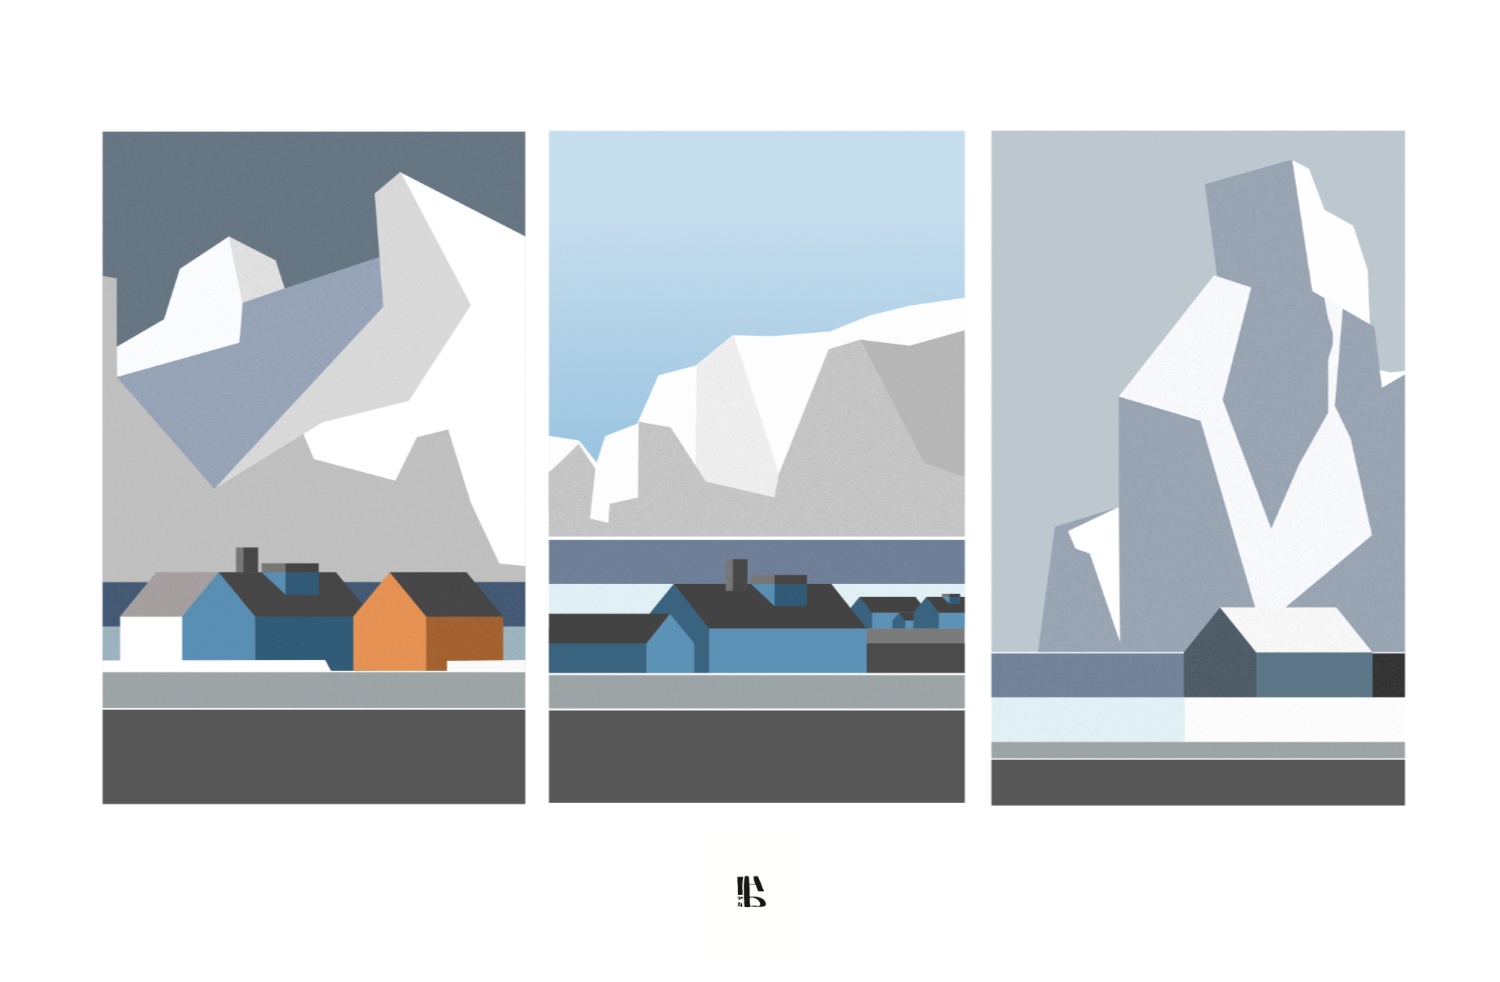 tre paesaggi nordici con case, montagne innevate e un fiordo d'acqua che li contiene